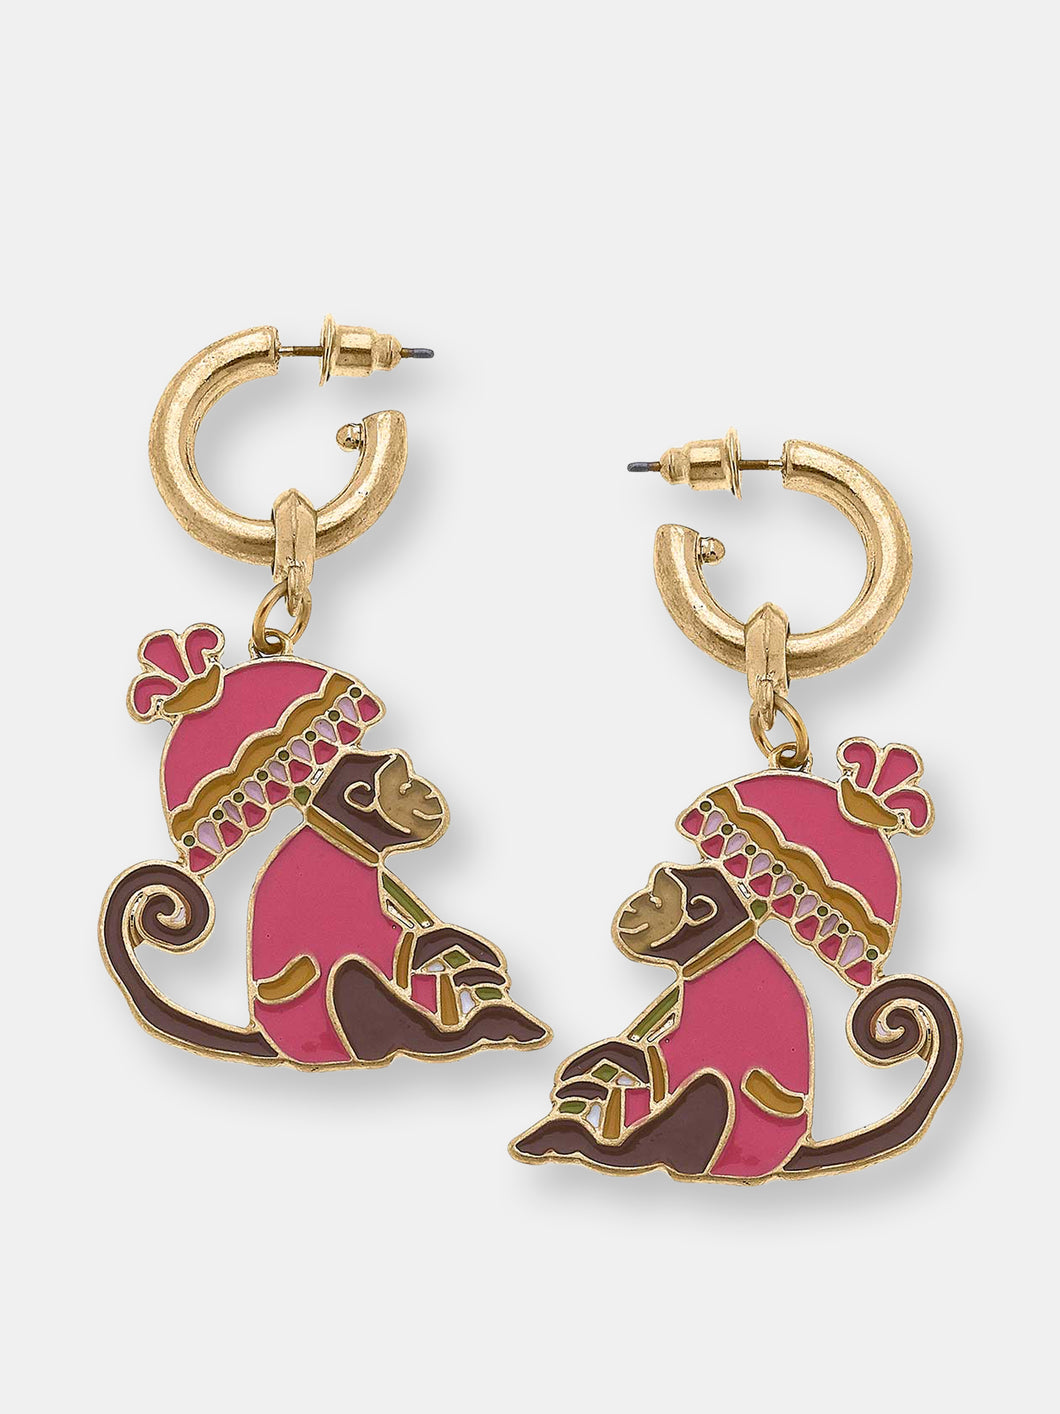 Remy Enamel Monkey Earrings in Pink & Brown